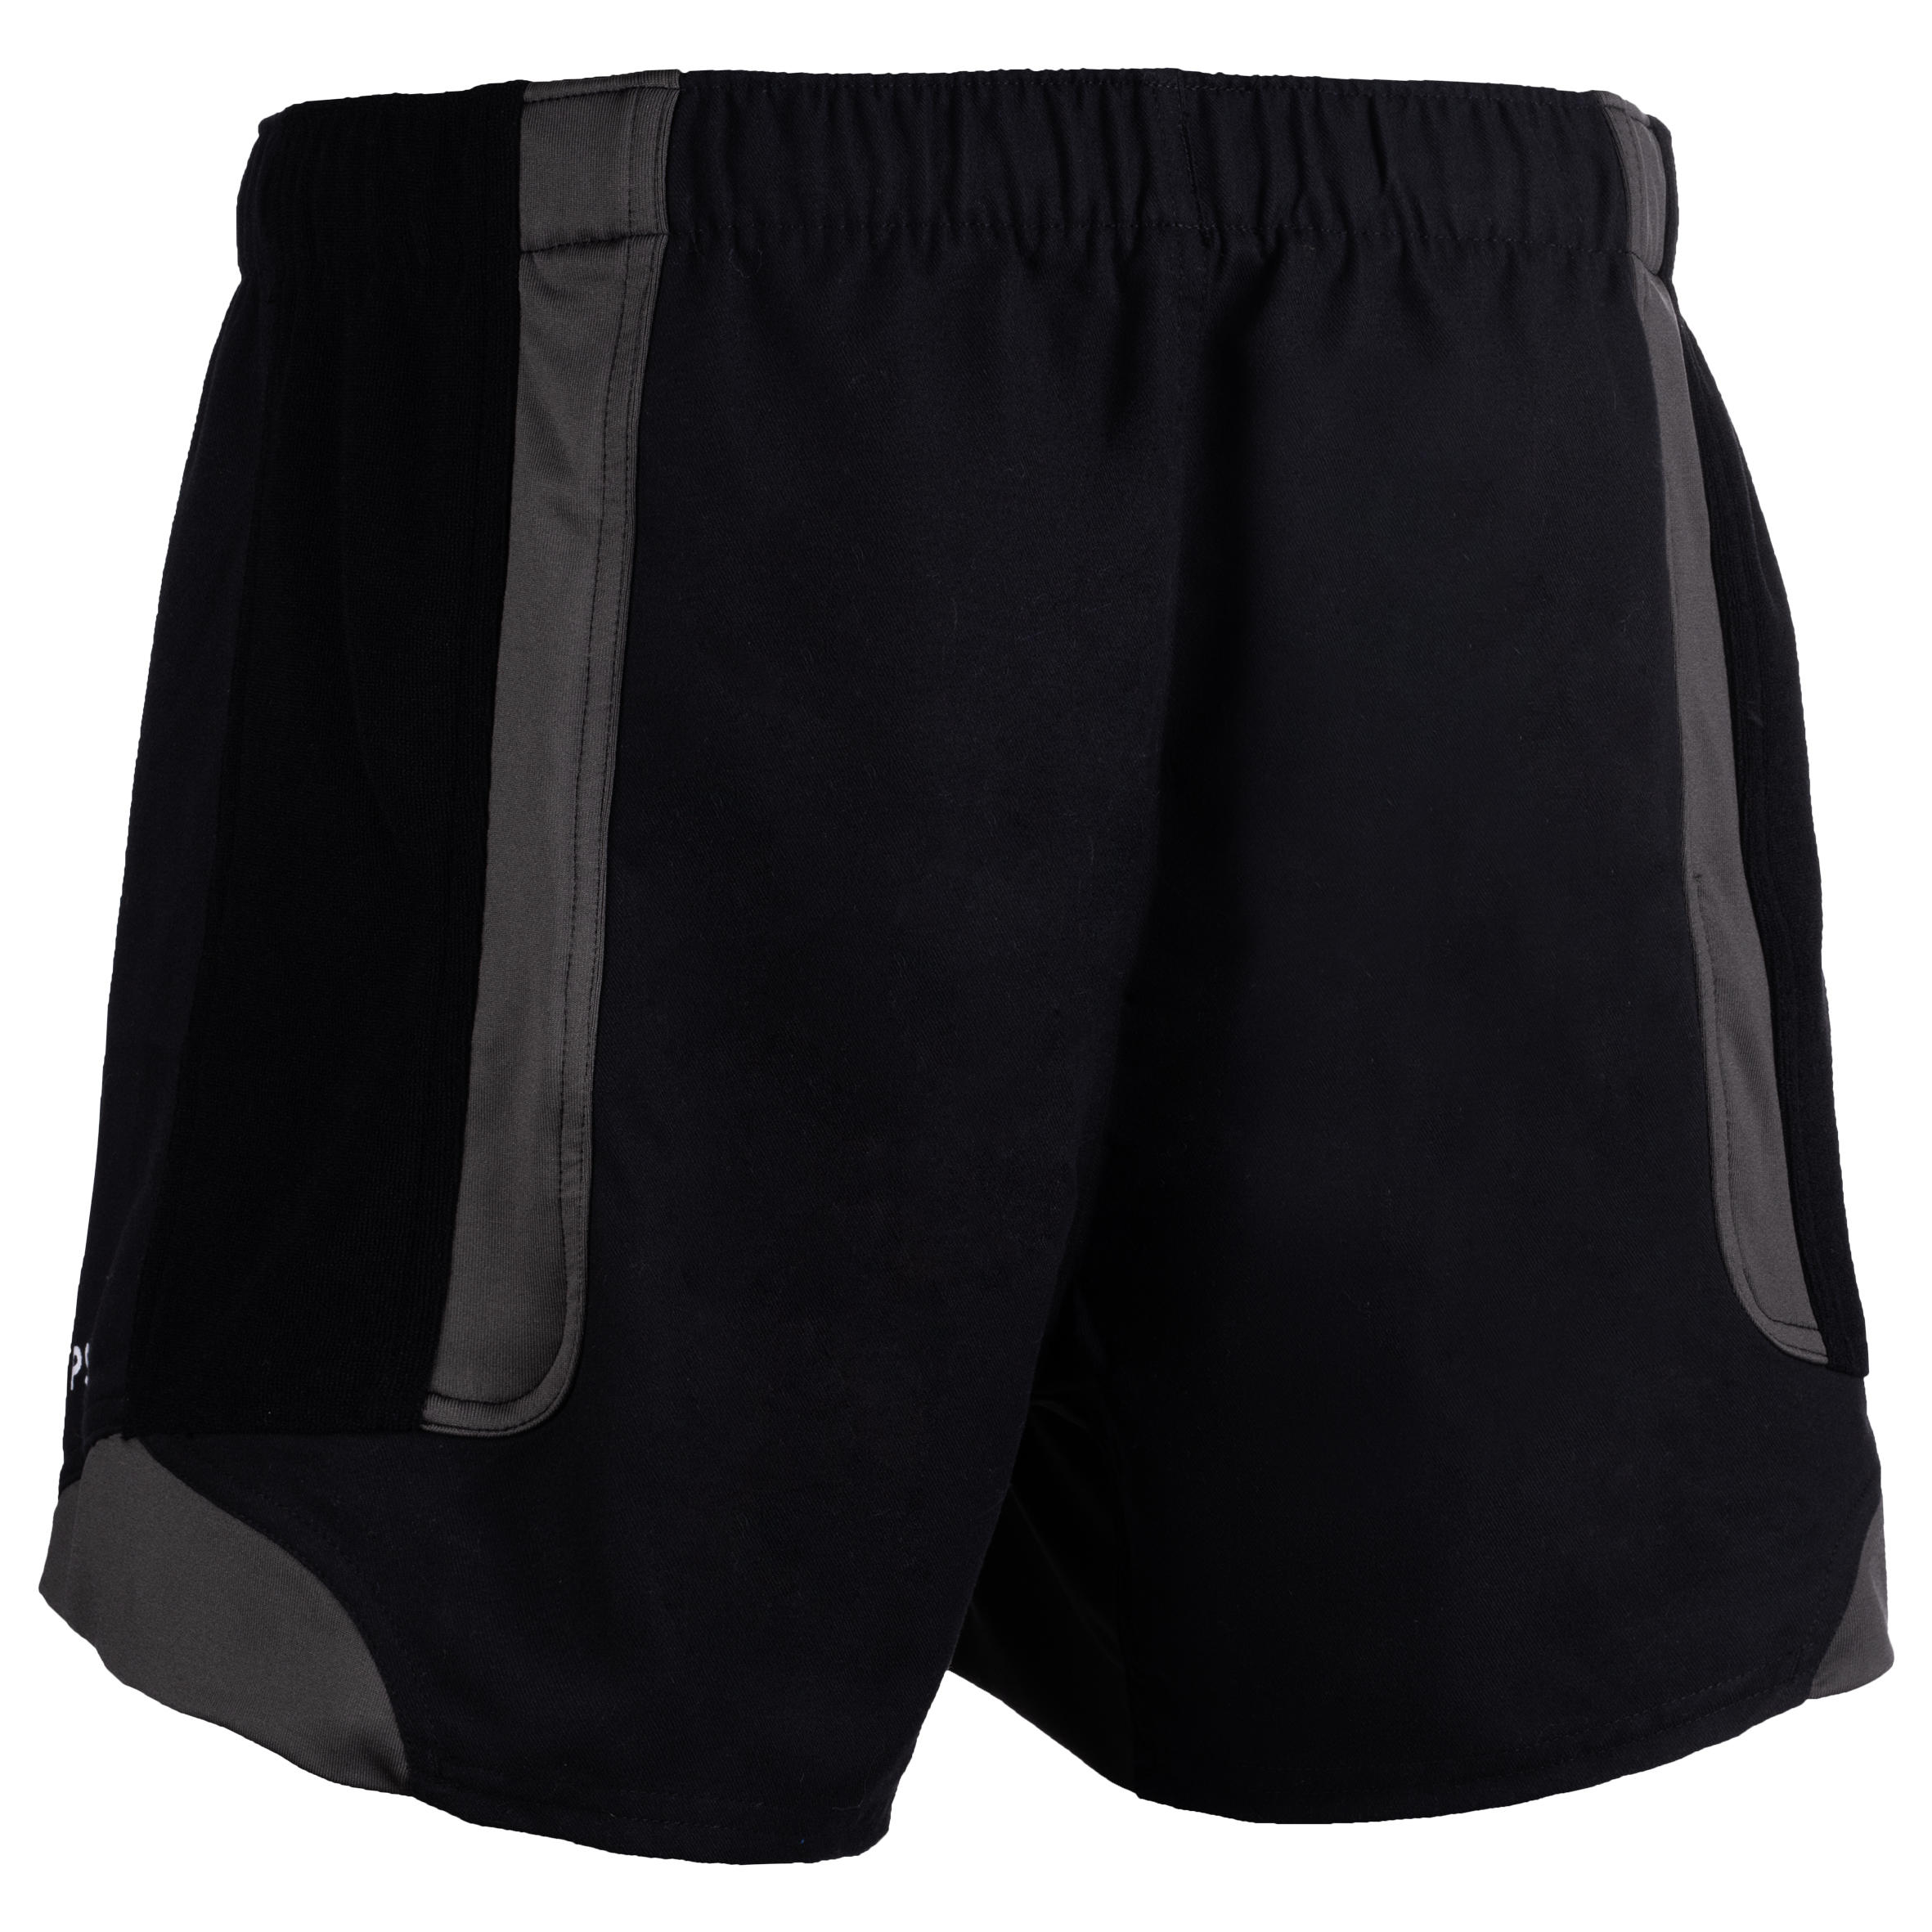 Adult Rugby Shorts R900 - Black/Grey 2/5